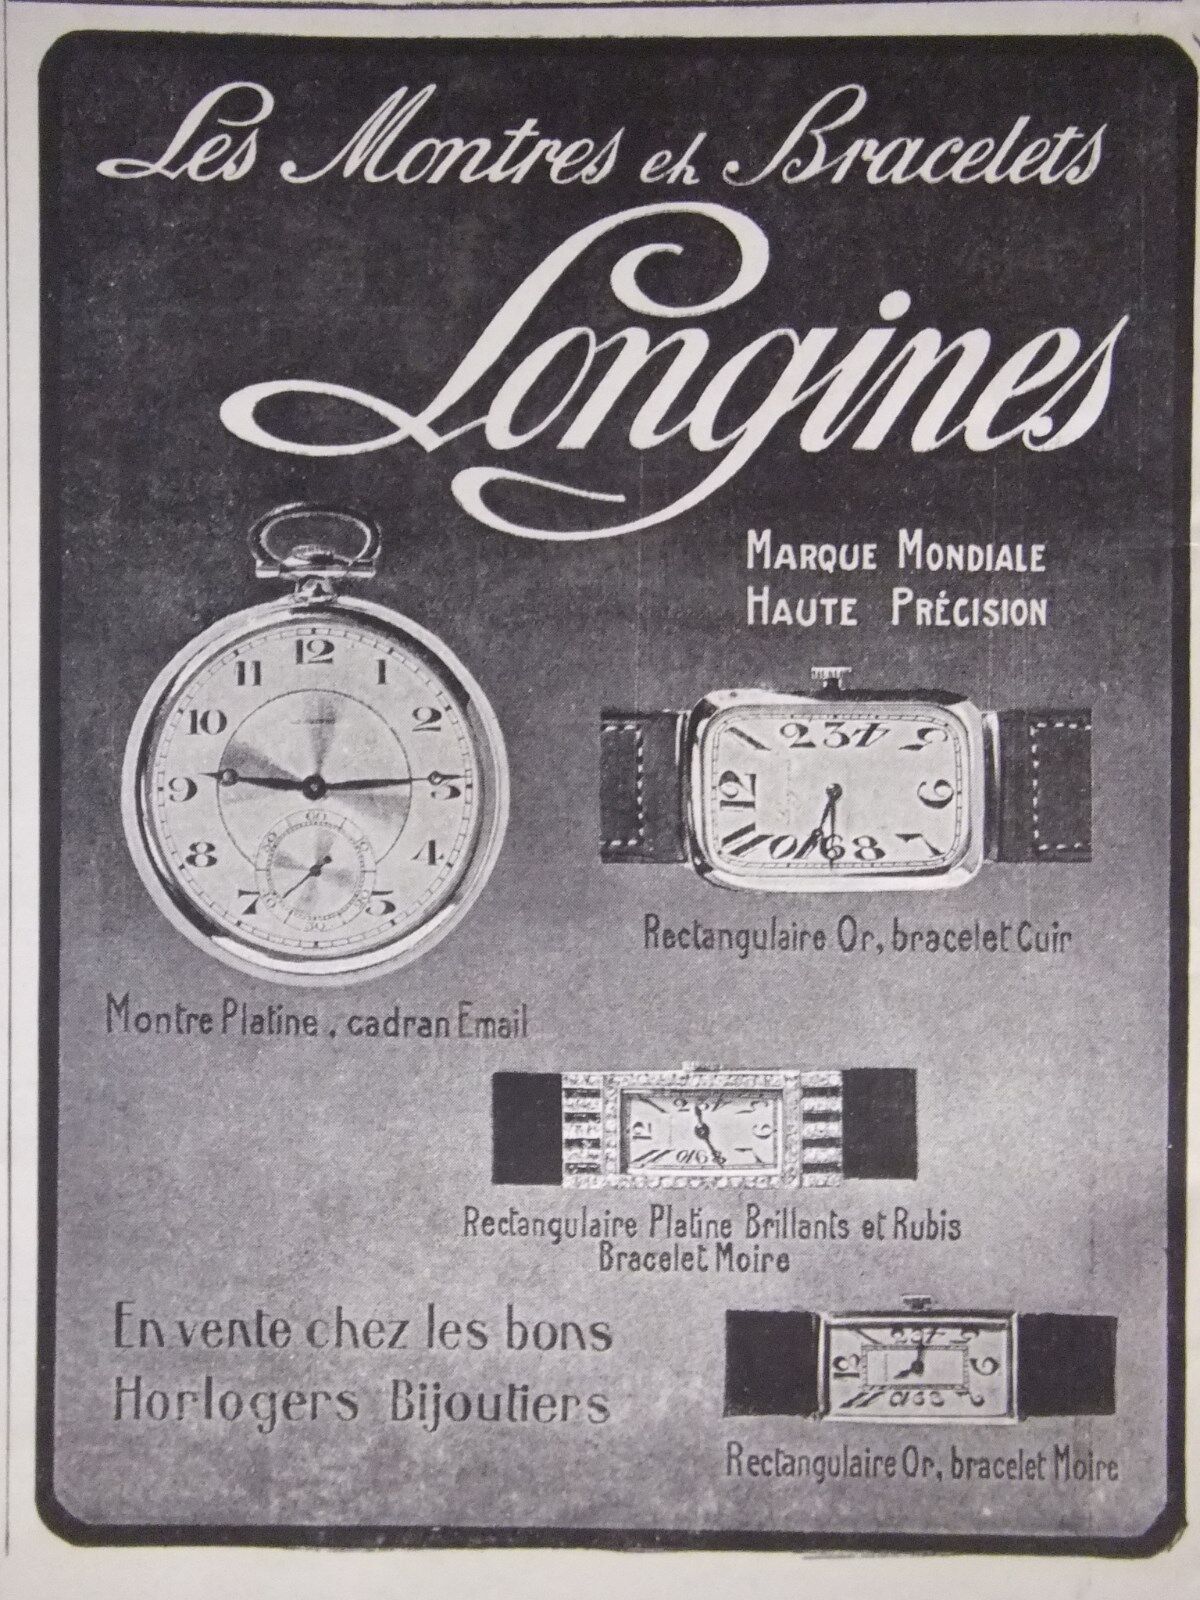 1925 LONGINES LES WATCHES ET BRACELETS ADVERTISING